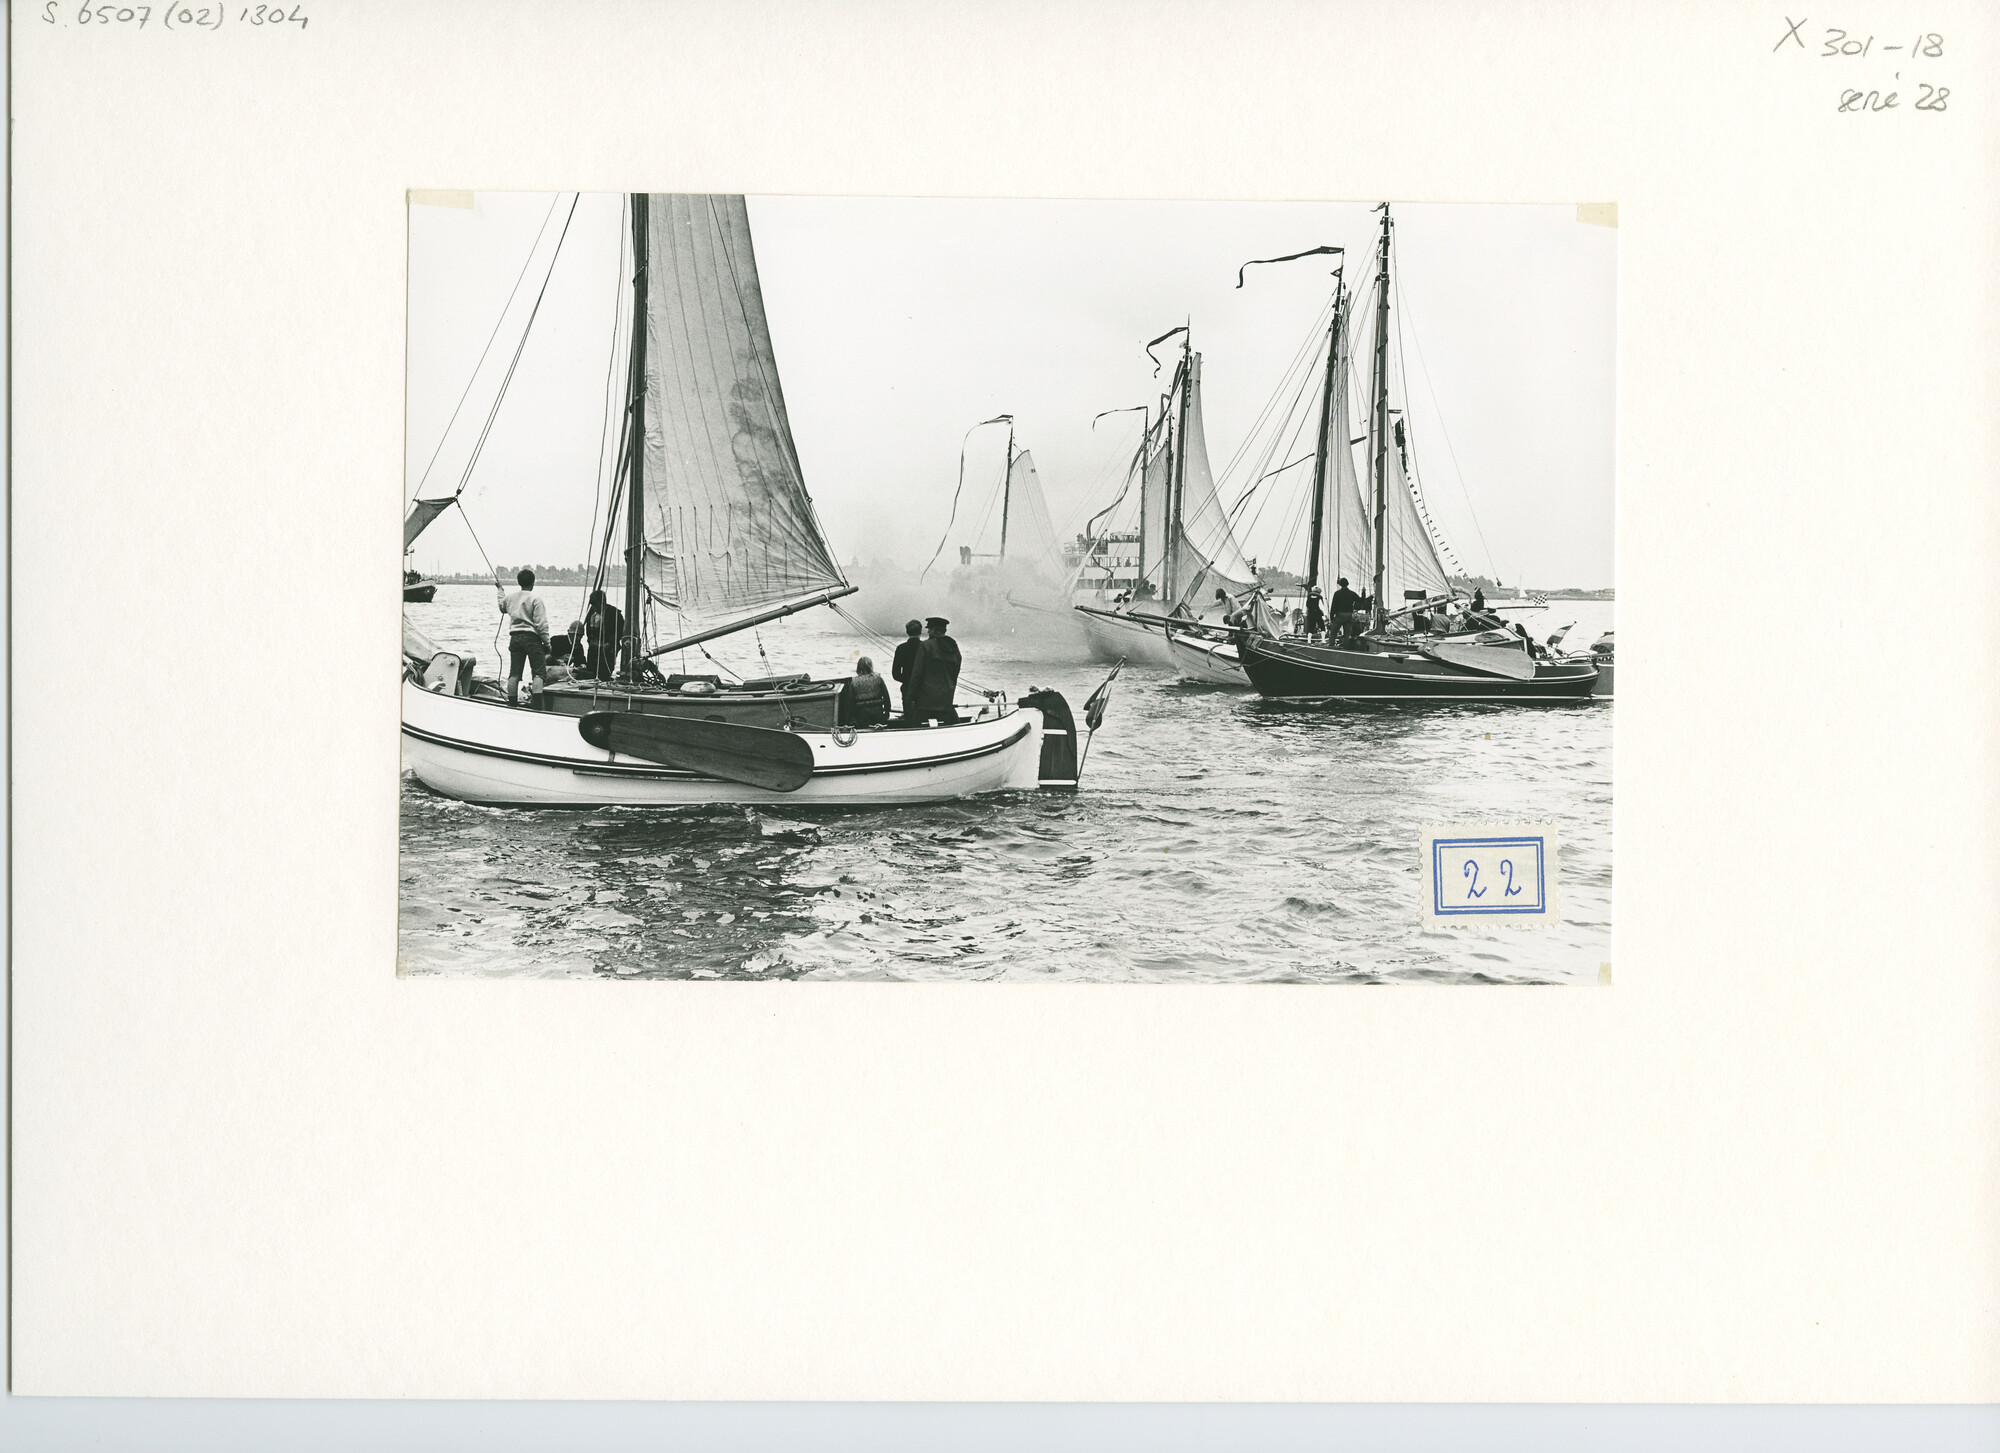 S.6507(02)1304.02; Zwart-wit foto van de reünie van ronde en platbodemjachten te Willemstad; foto